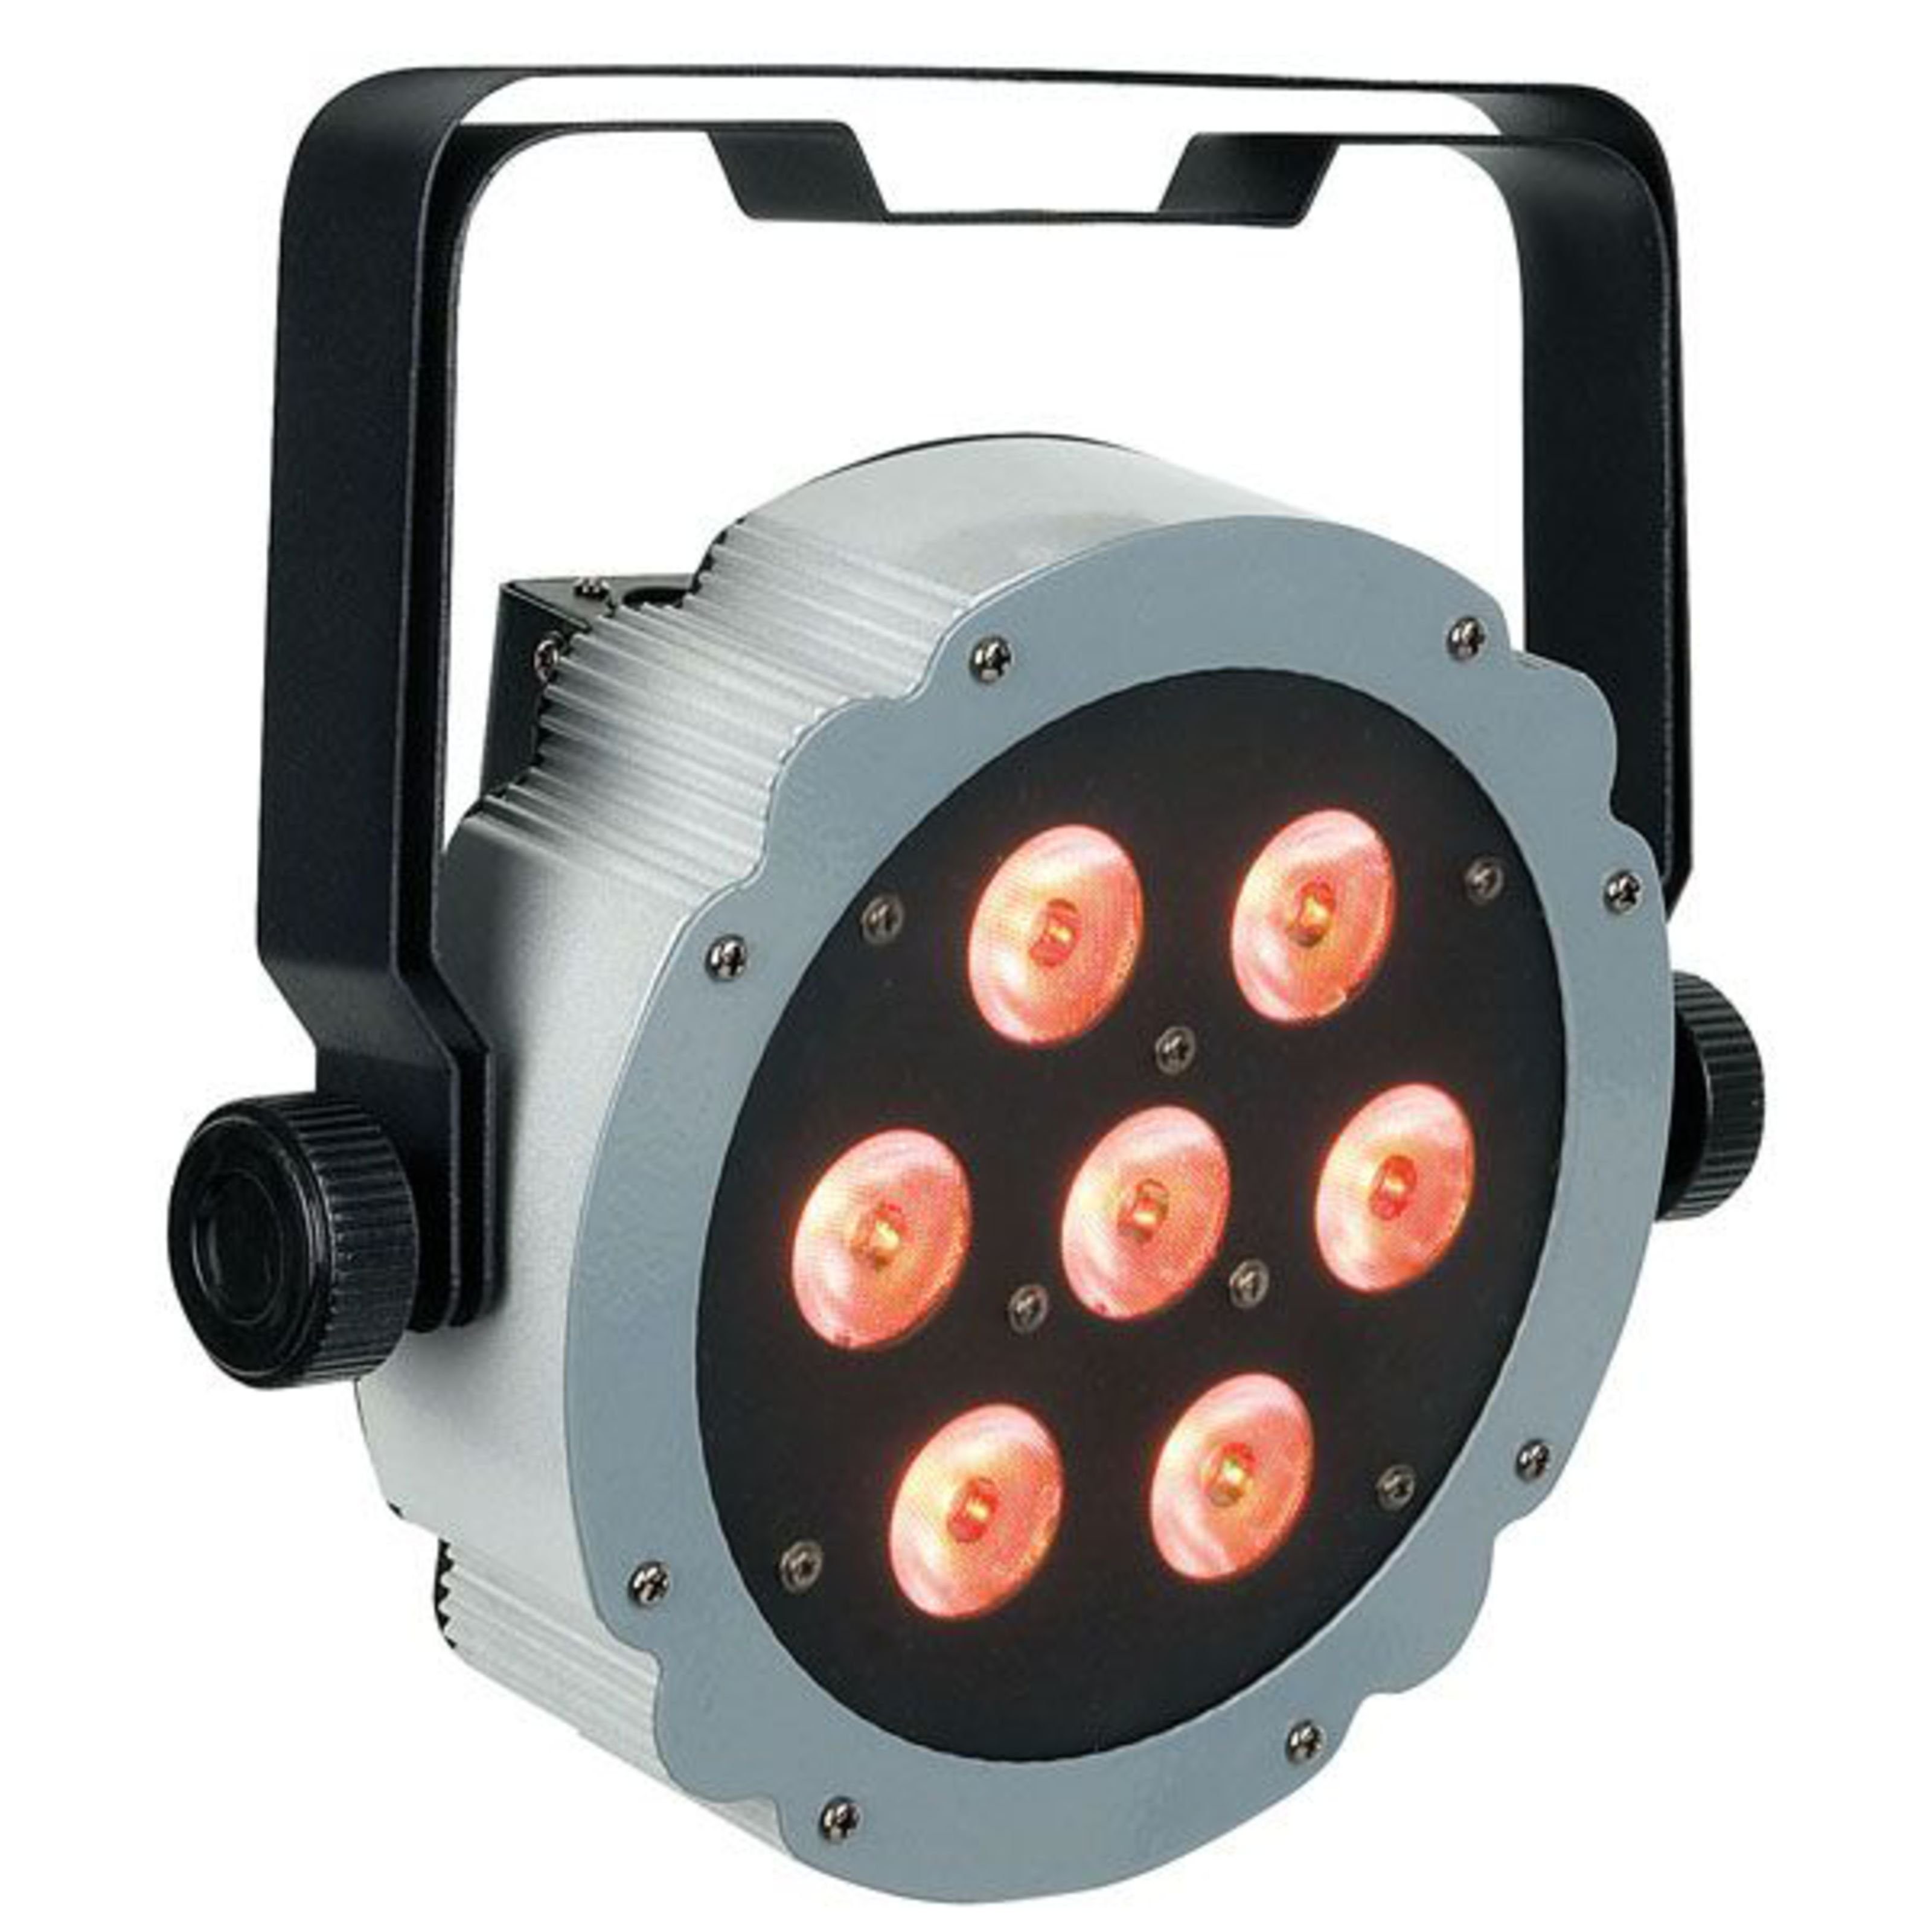 Show tec LED Discolicht, Compact Par 7 Tri - LED PAR Scheinwerfer